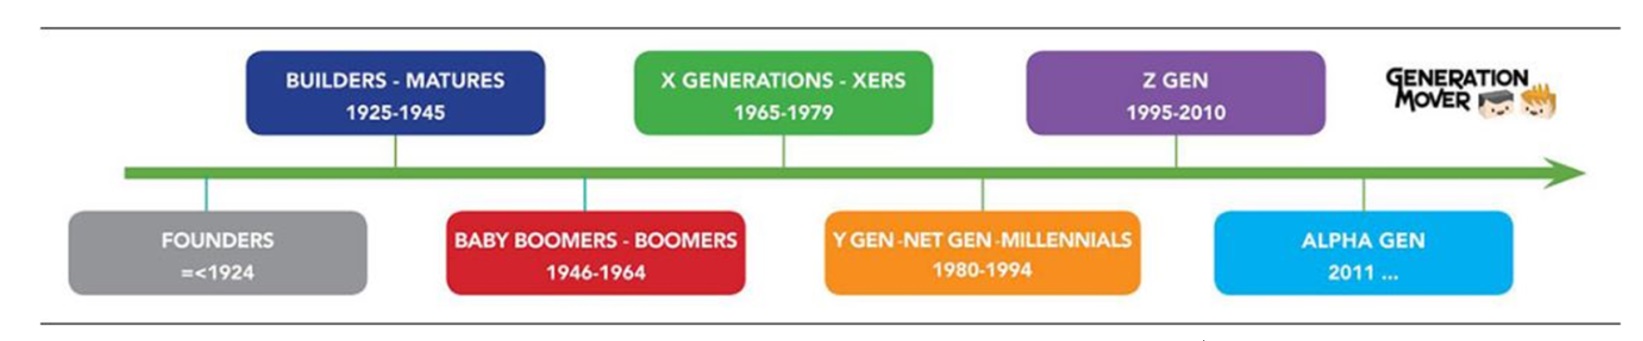 Figura 3 – Linea delle generazioni (fonte: Generation Mover)